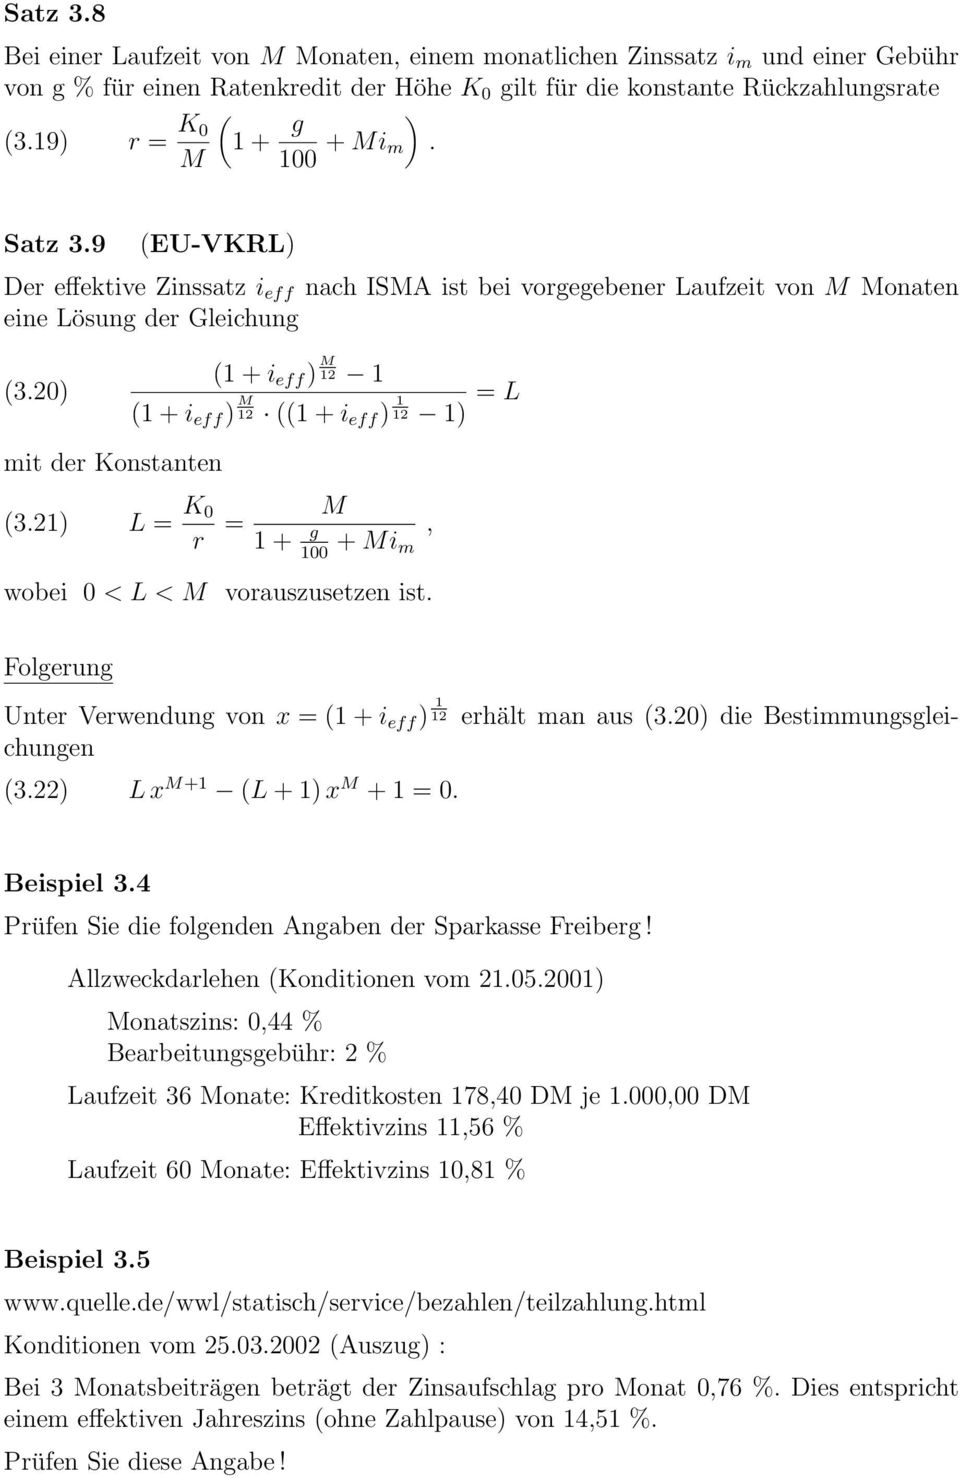 21) L = K 0 r = M 1 + g + Mi 100 m wobei 0 < L < M vorauszusetze ist., Folgerug Uter Verwedug vo x = 1 + i eff ) 1 12 erhält ma aus 3.20) die Bestimmugsgleichuge 3.22) L x M+1 L + 1) x M + 1 = 0.